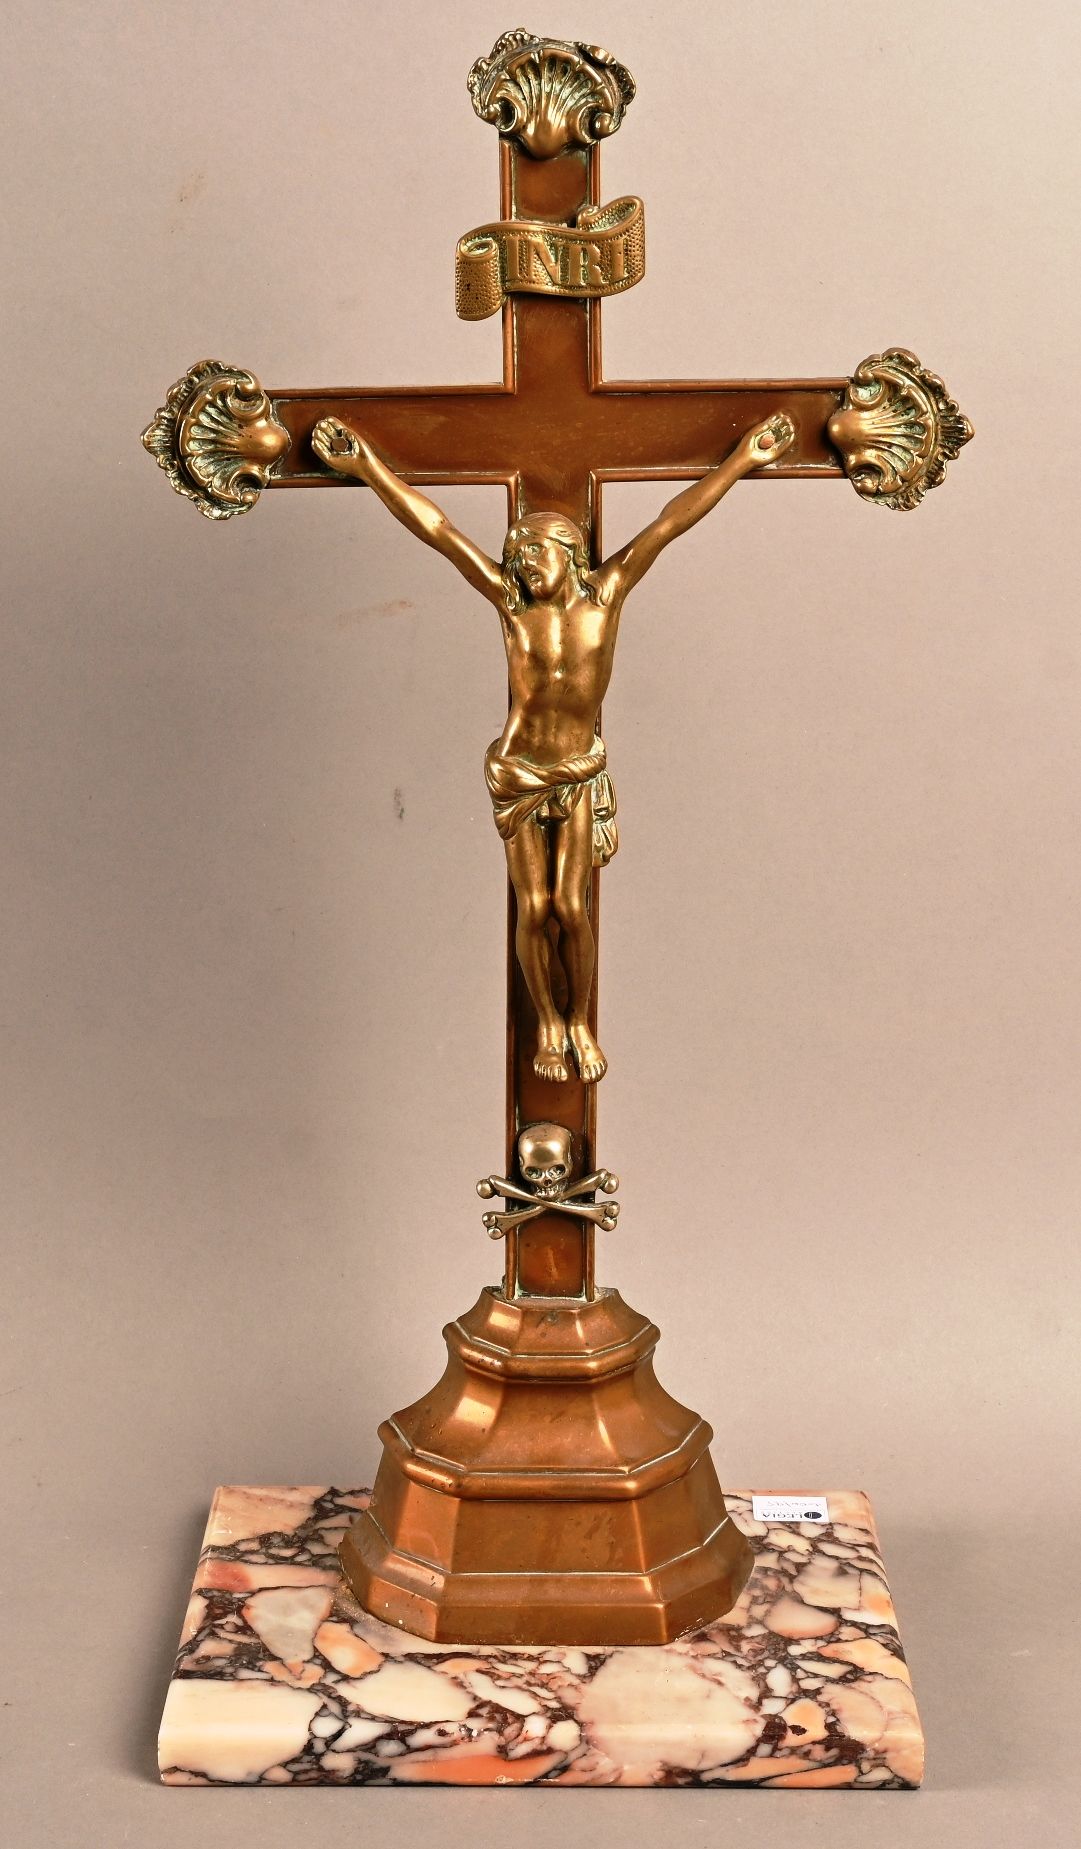 Christ en croix en cuivre doré 大理石夹板上的铜镀金十字架上的基督。
高48厘米。按原样。